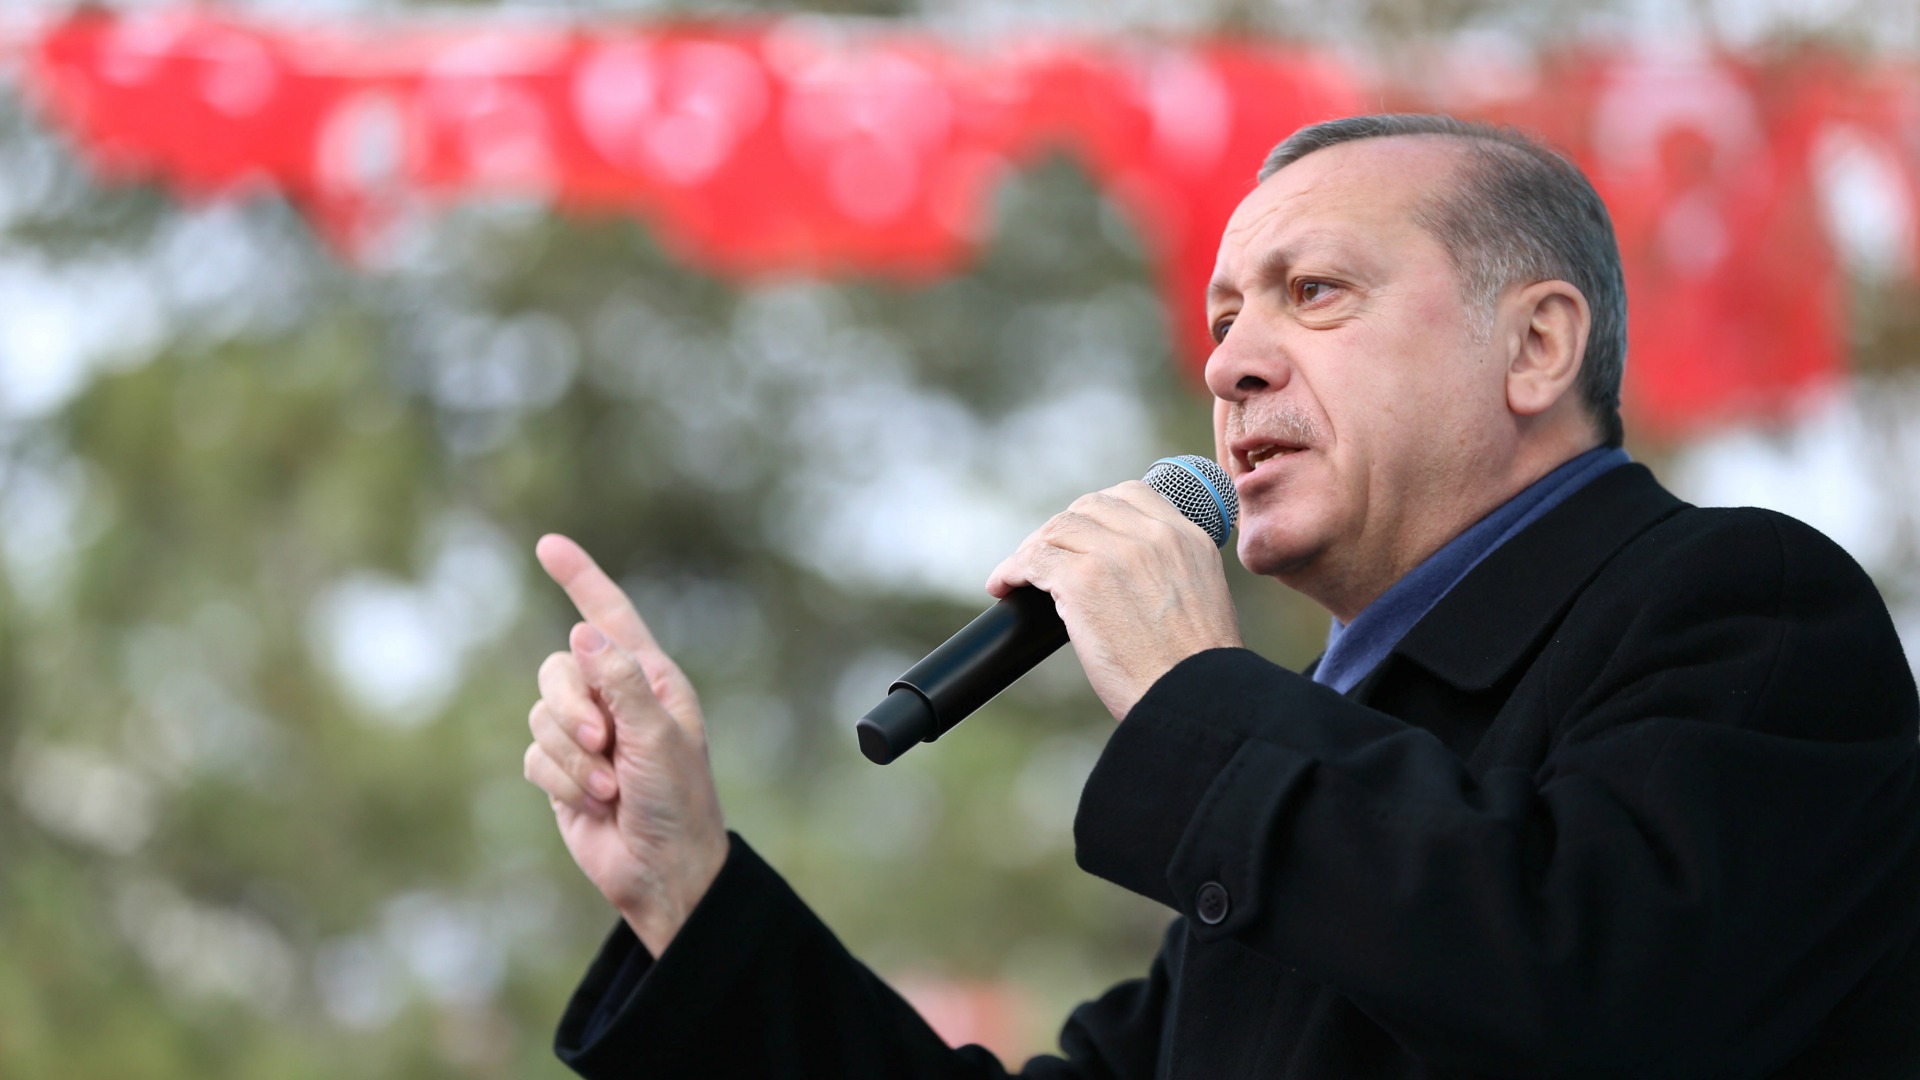 El autoritarismo de Erdogan aleja a Turquía de la Unión Europea